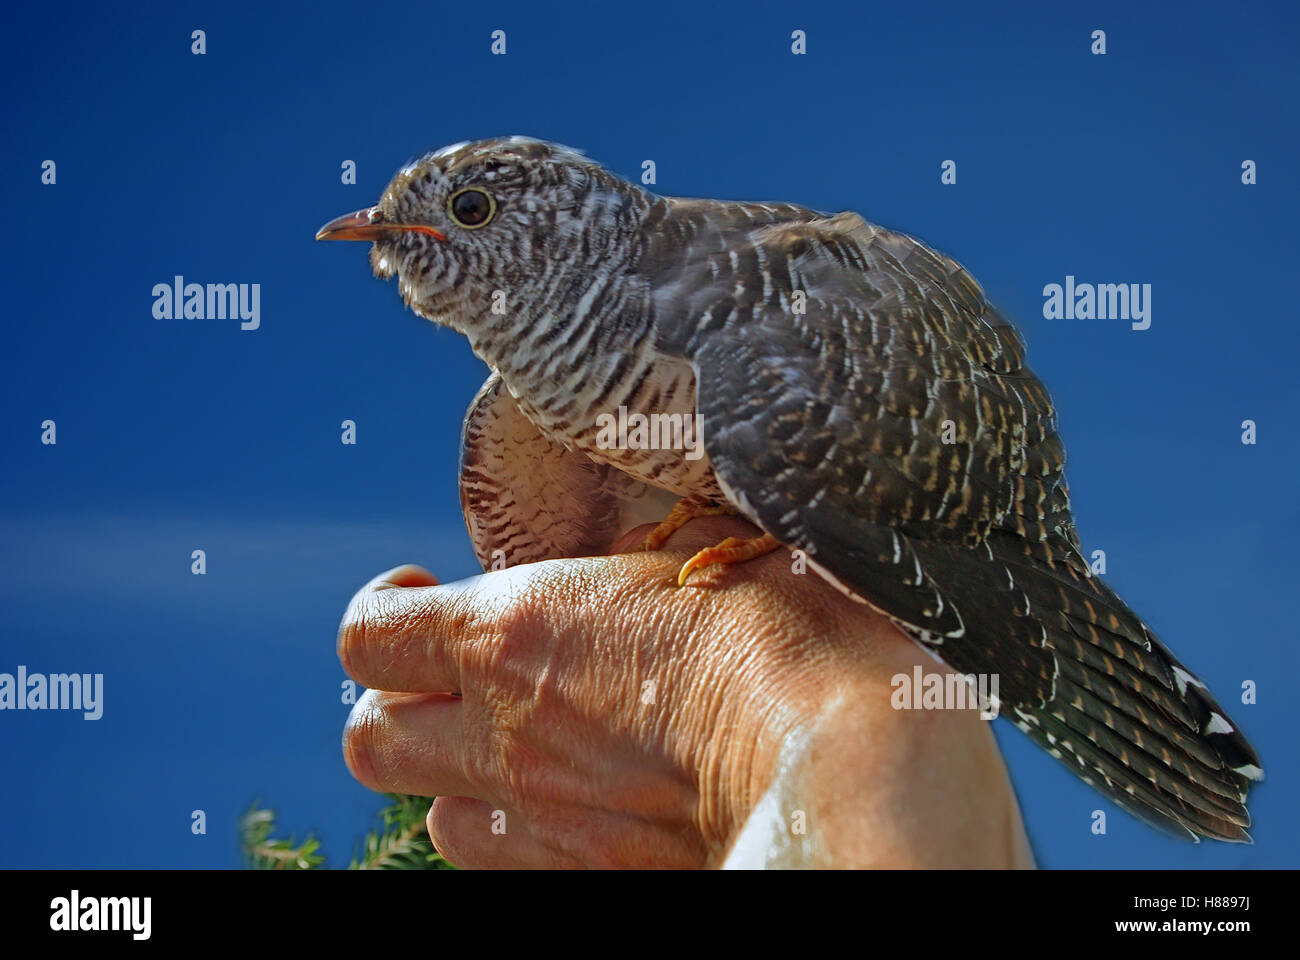 Cuckoo against the dark blue sky on a hand Stock Photo